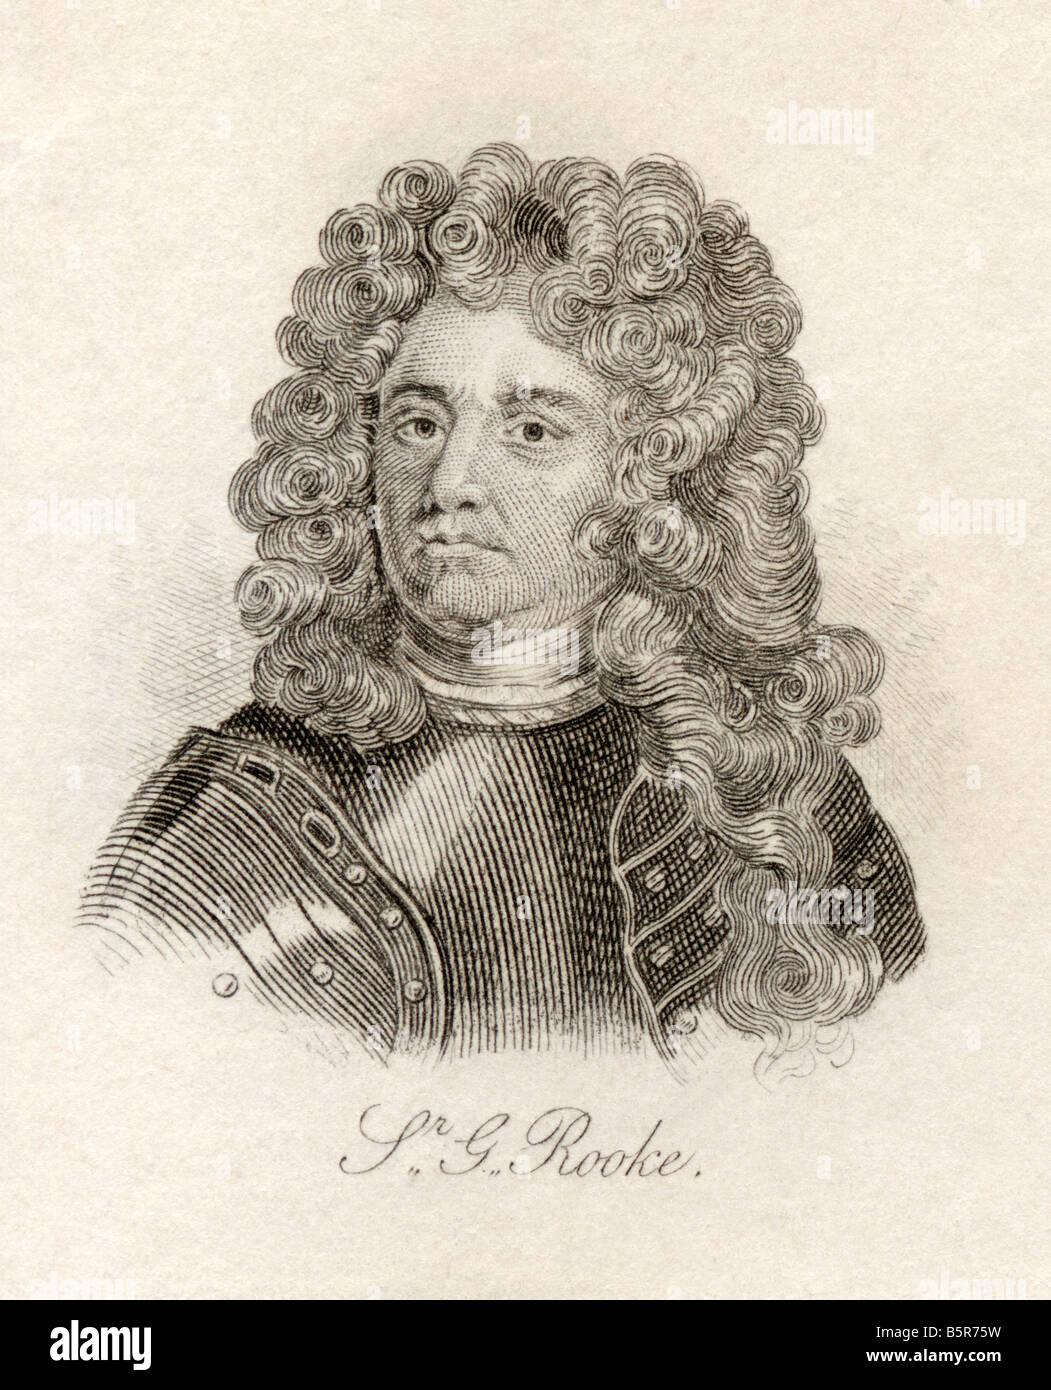 Sir George Rooke, 1650 - 1709. Commandant naval anglais et amiral. Extrait du livre Crabb's Historical Dictionary, publié en 1825. Banque D'Images